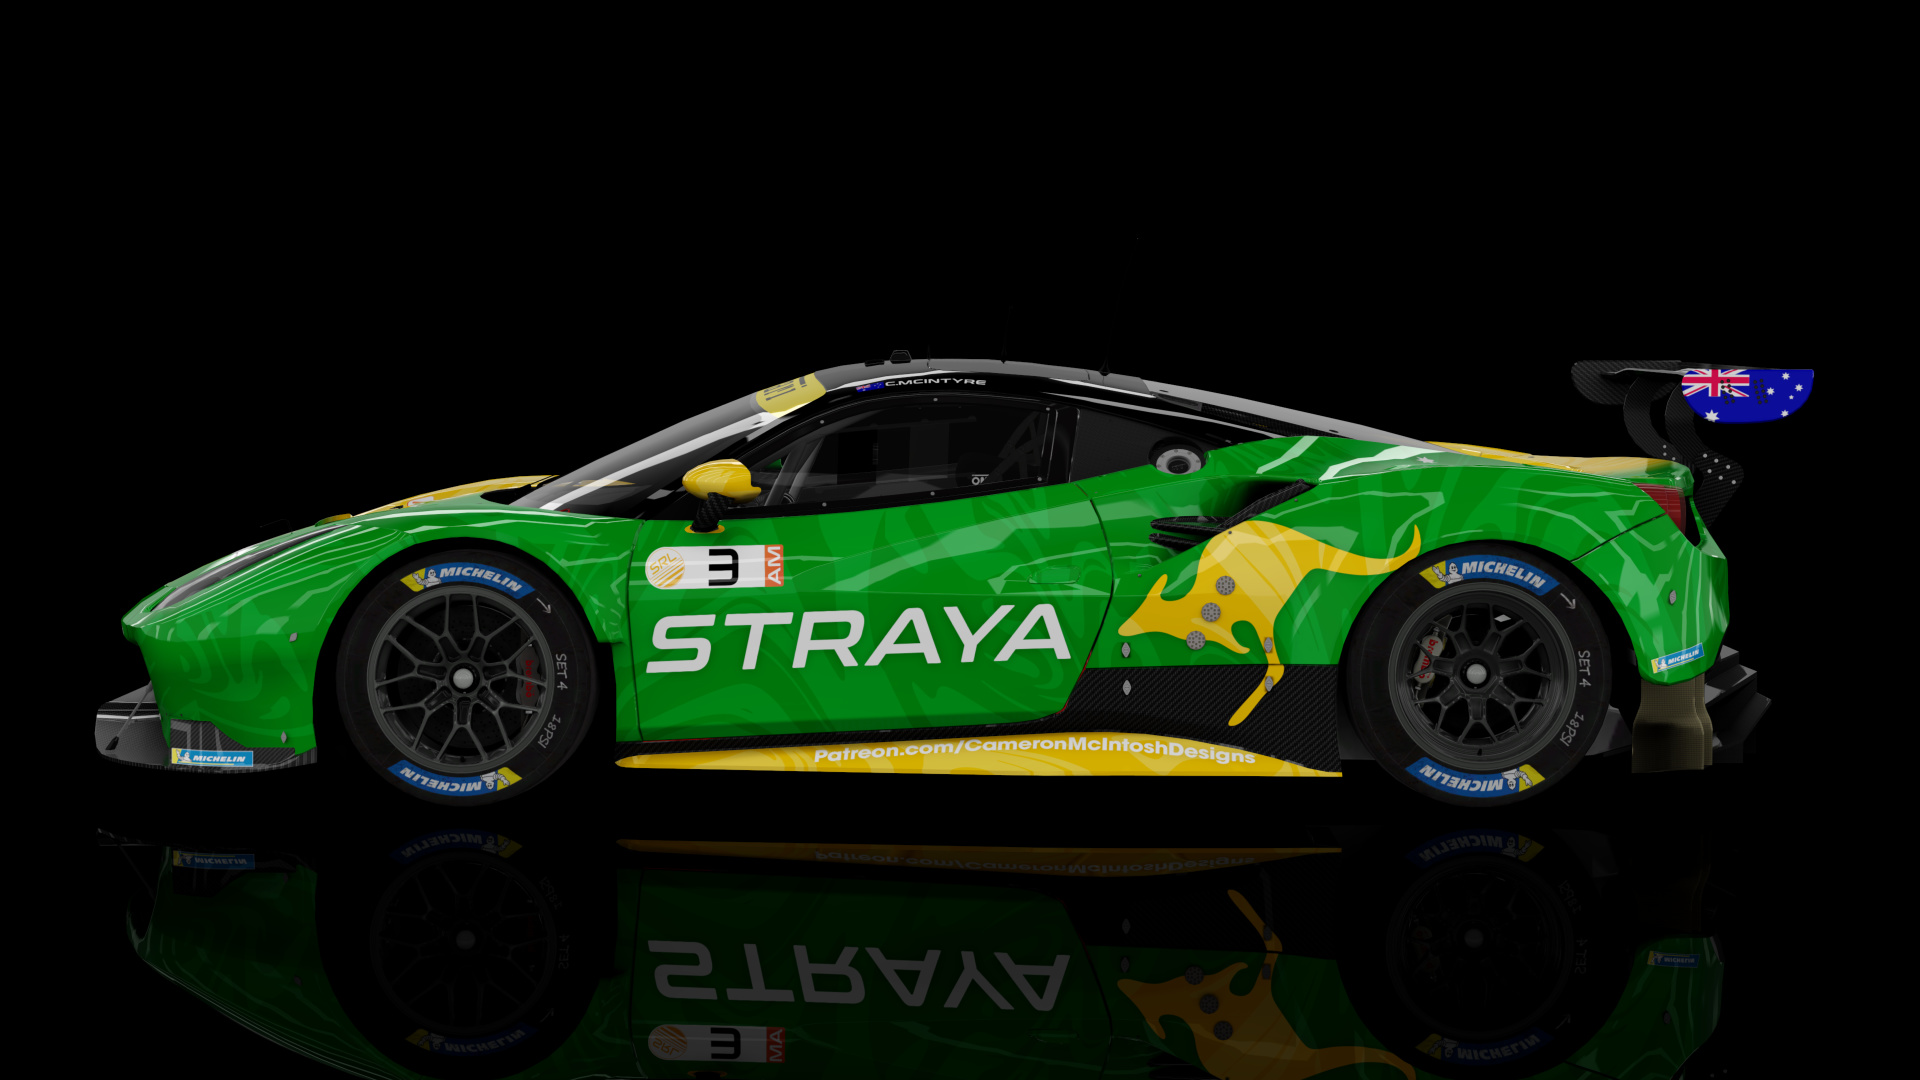 2018 Ferrari 488 GTE Evo [Michelotto], skin 2024 #3 Team Straya SRL